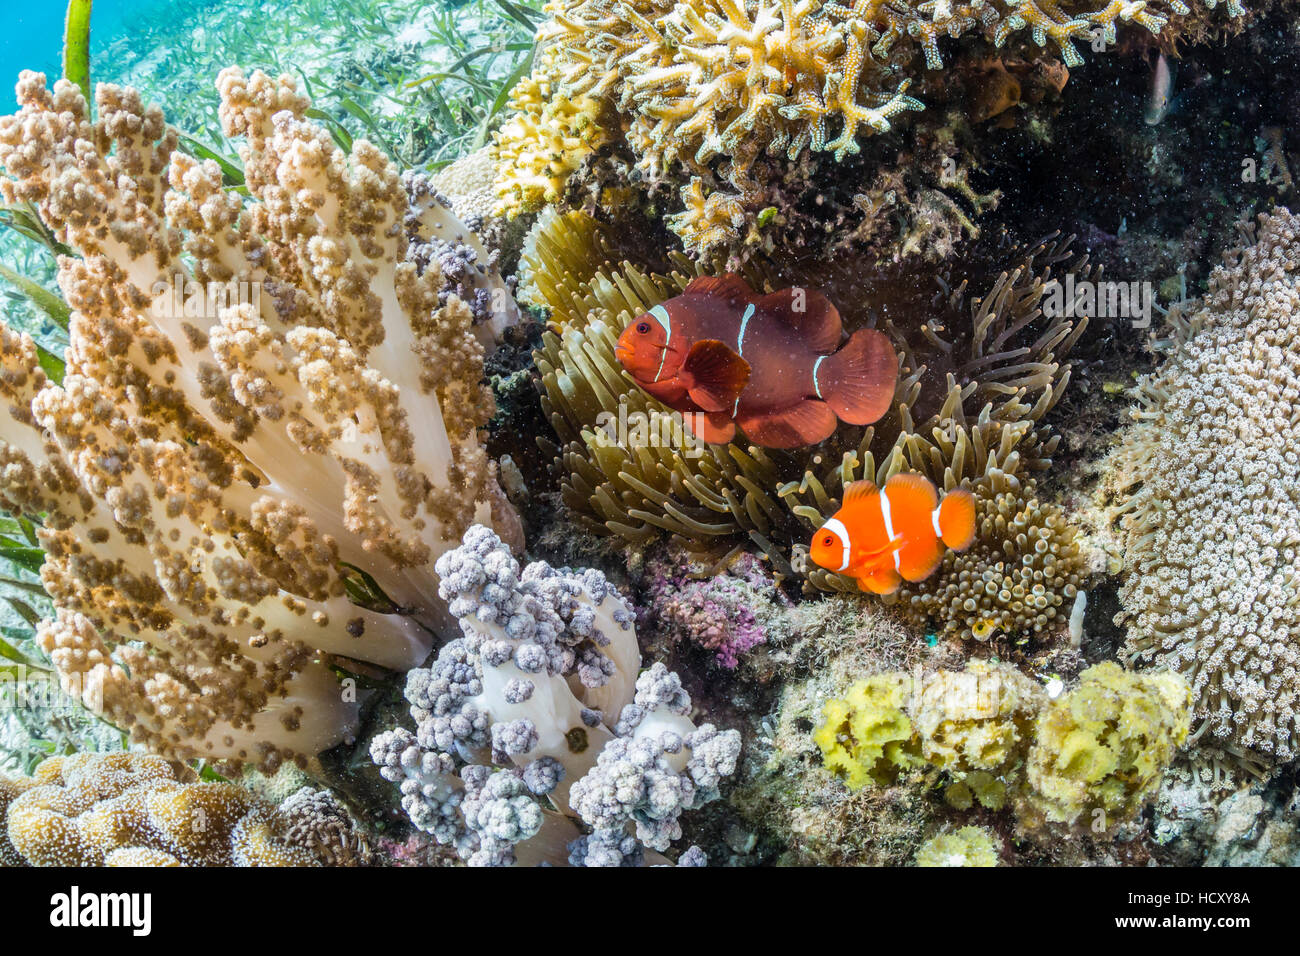 Adultos (Premnas biaculeatus spinecheek anemonefish), Sebayur Island, el Parque Nacional de Komodo, Flores Mar, Indonesia Foto de stock